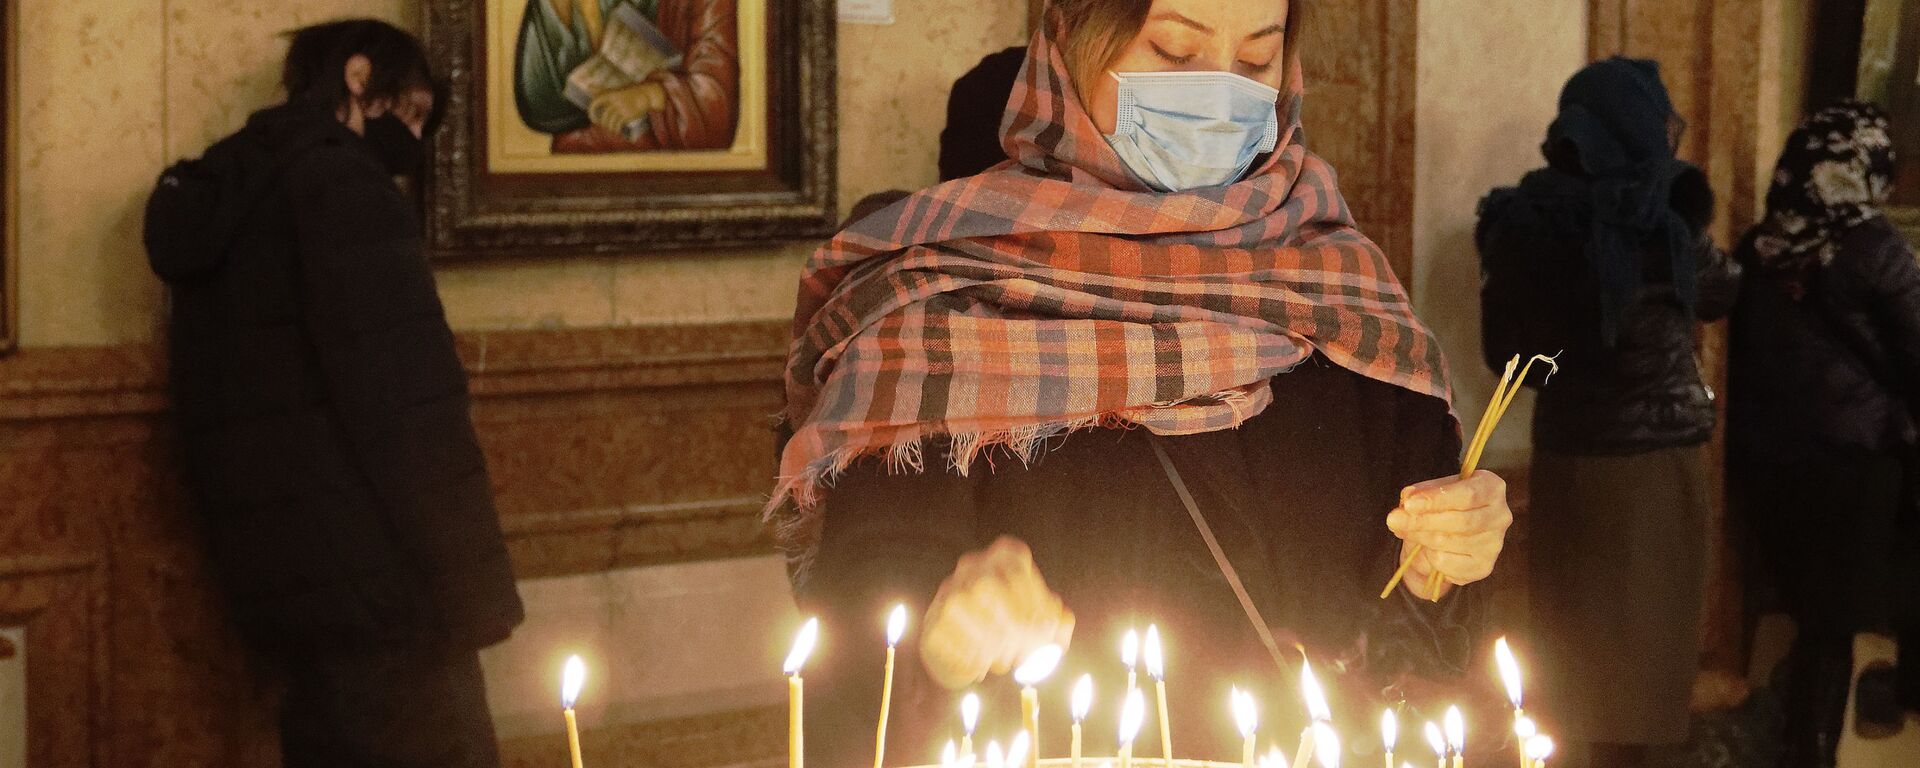 Религия и православие. Верующие в церкви зажигают свечи - Sputnik Грузия, 1920, 02.04.2021